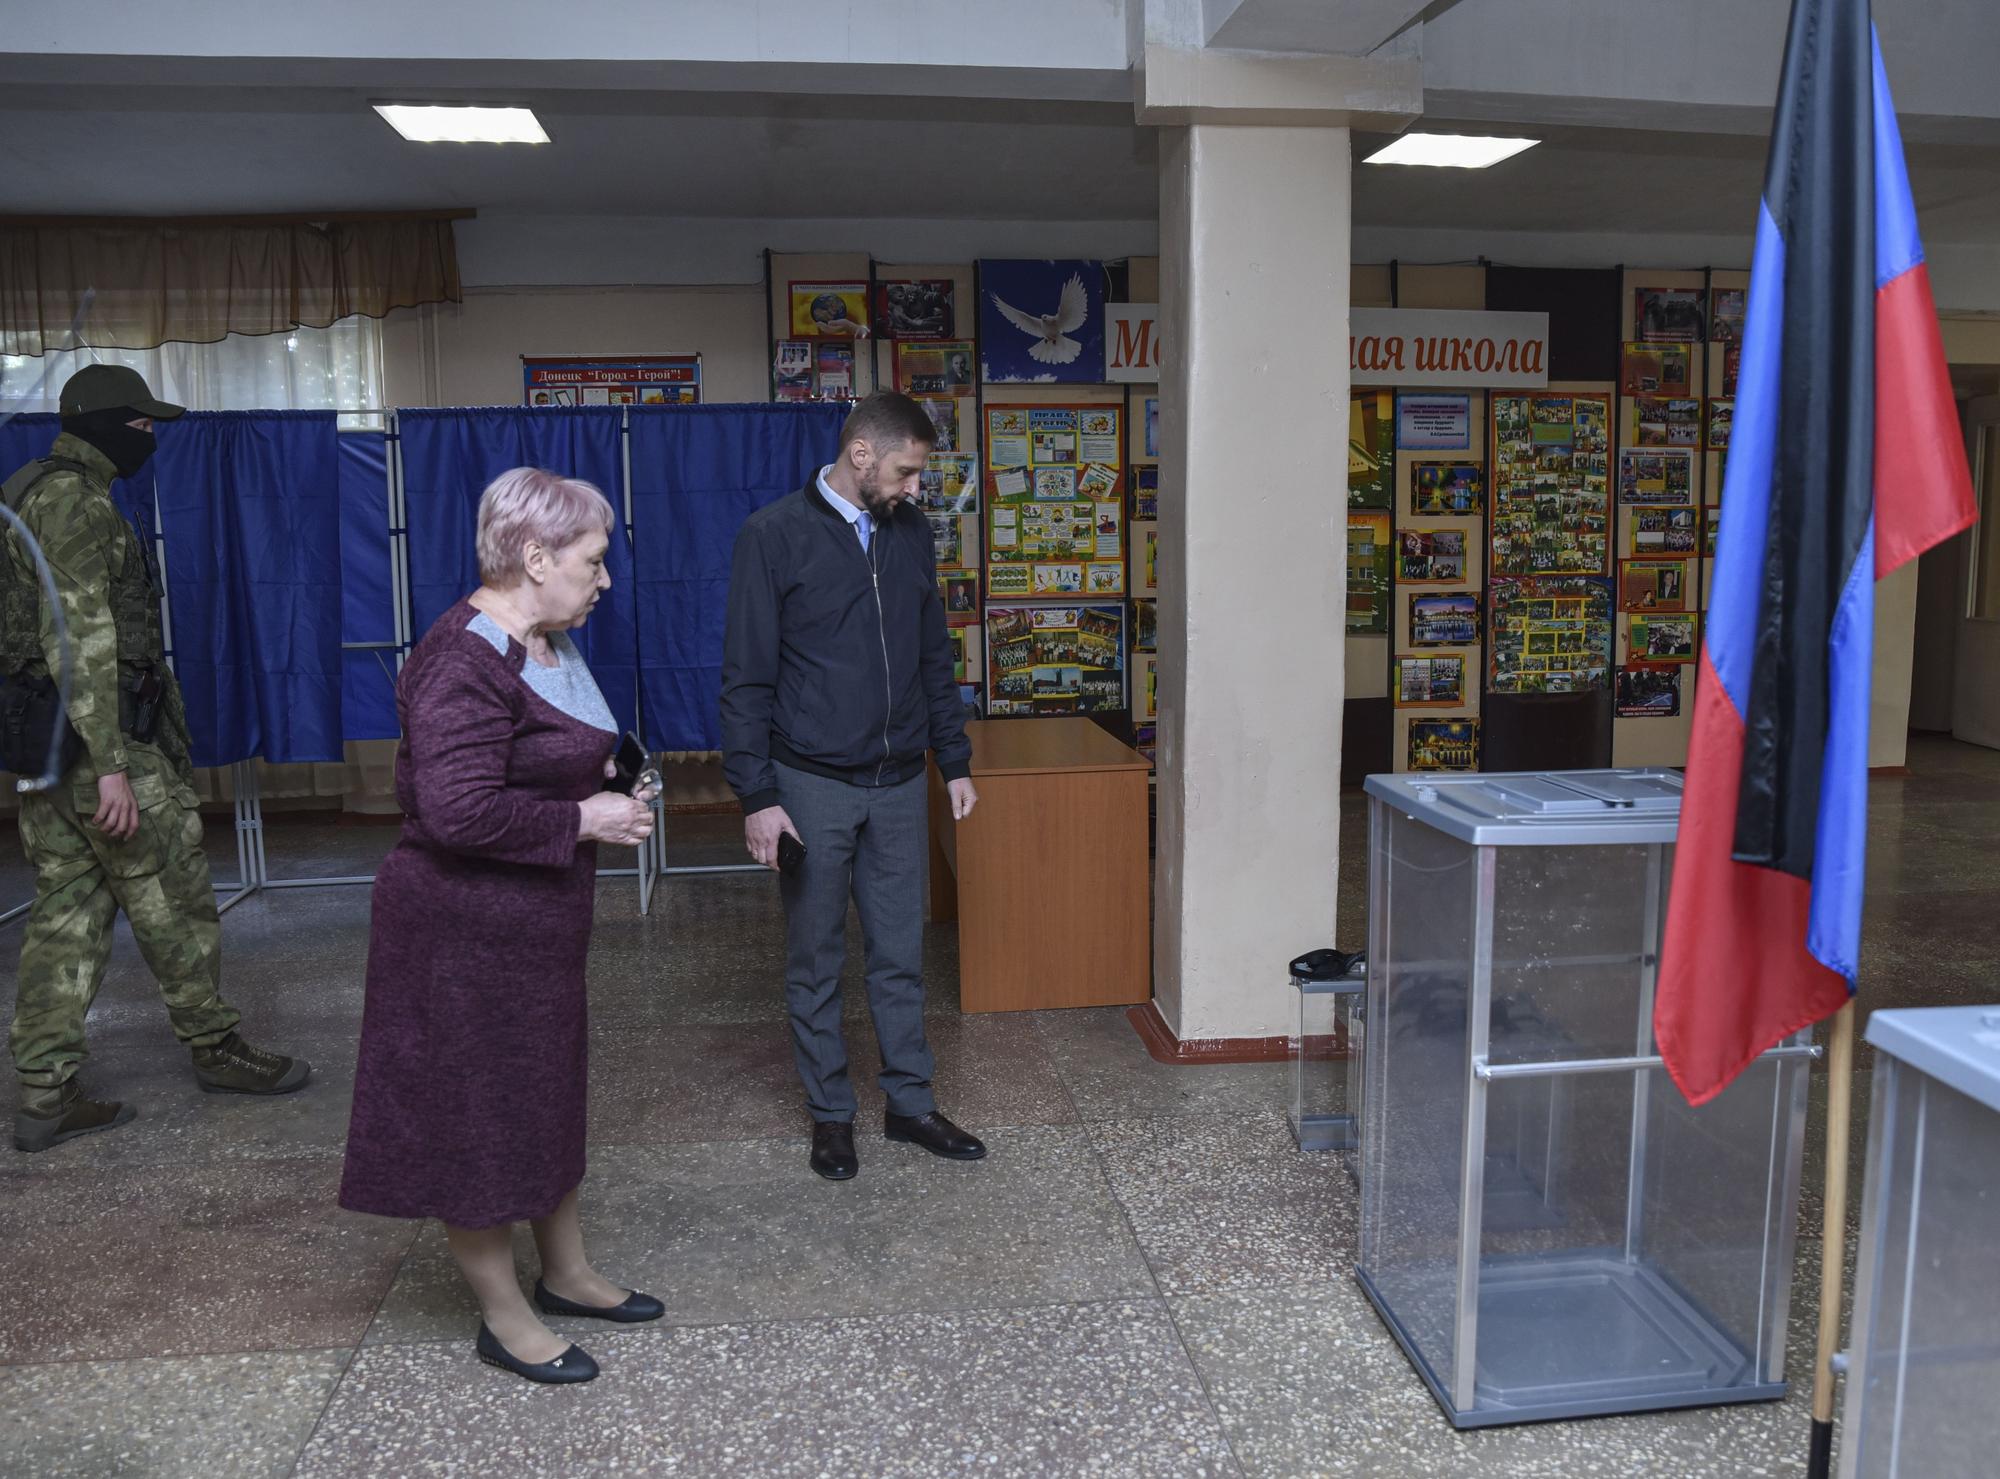 Preparation for the referendum in Donetsk